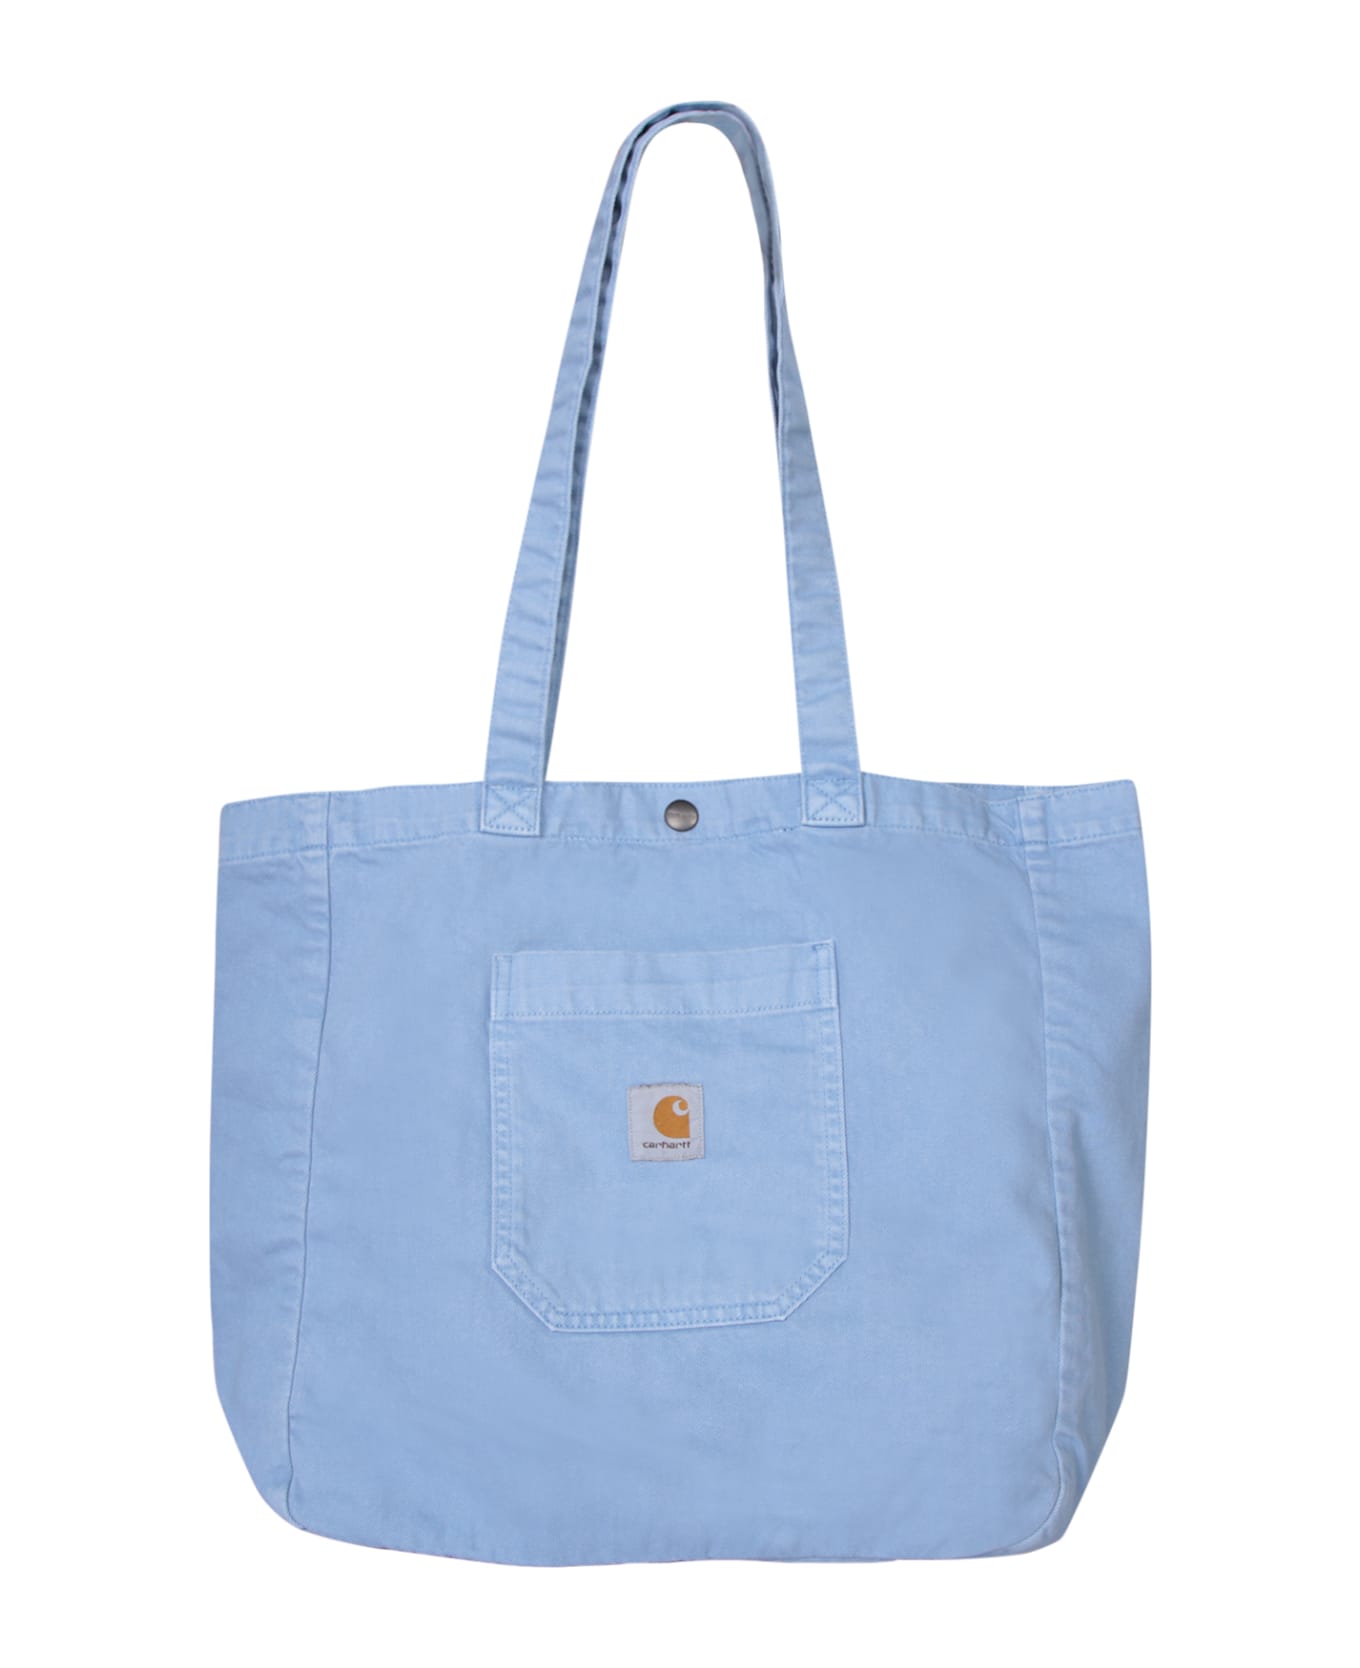 Carhartt Wip Garrison Bag In Blue - Blue トートバッグ